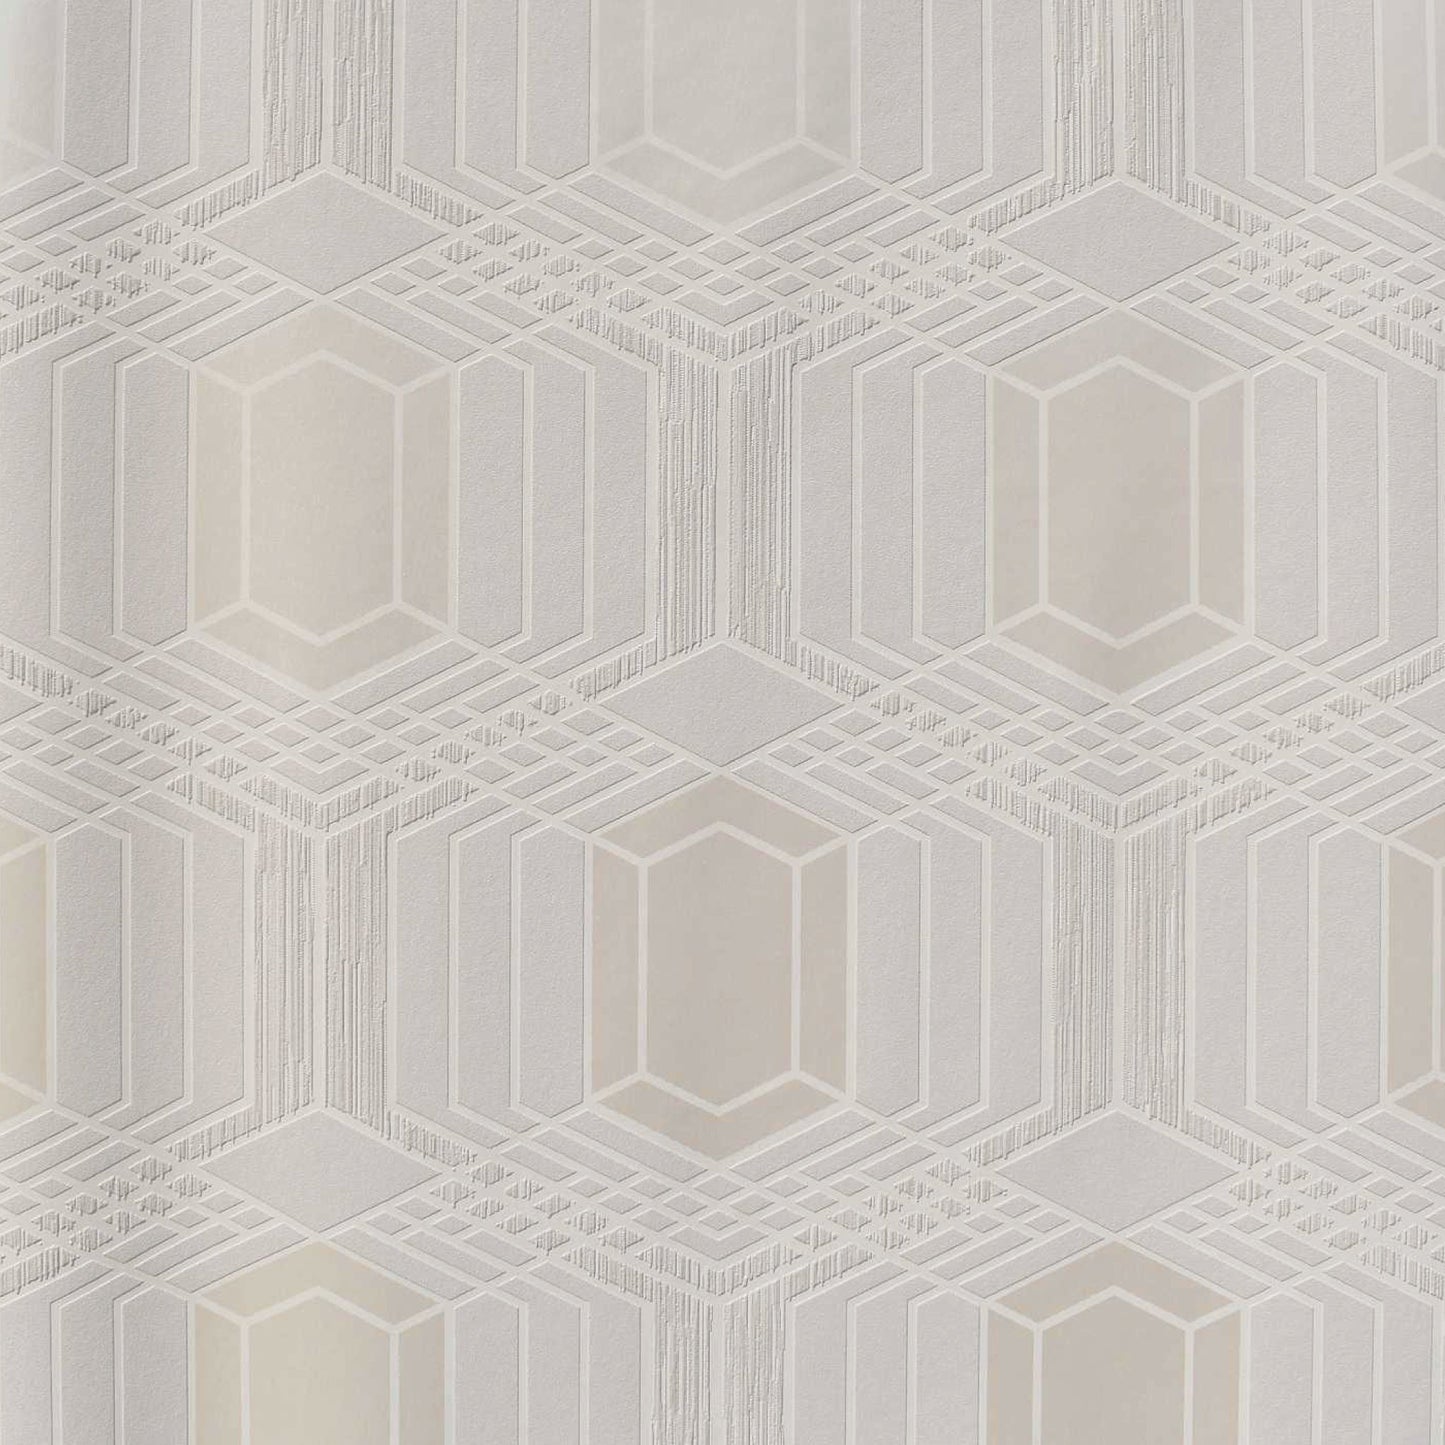 Interlinked Geometry Bliss Wallpaper